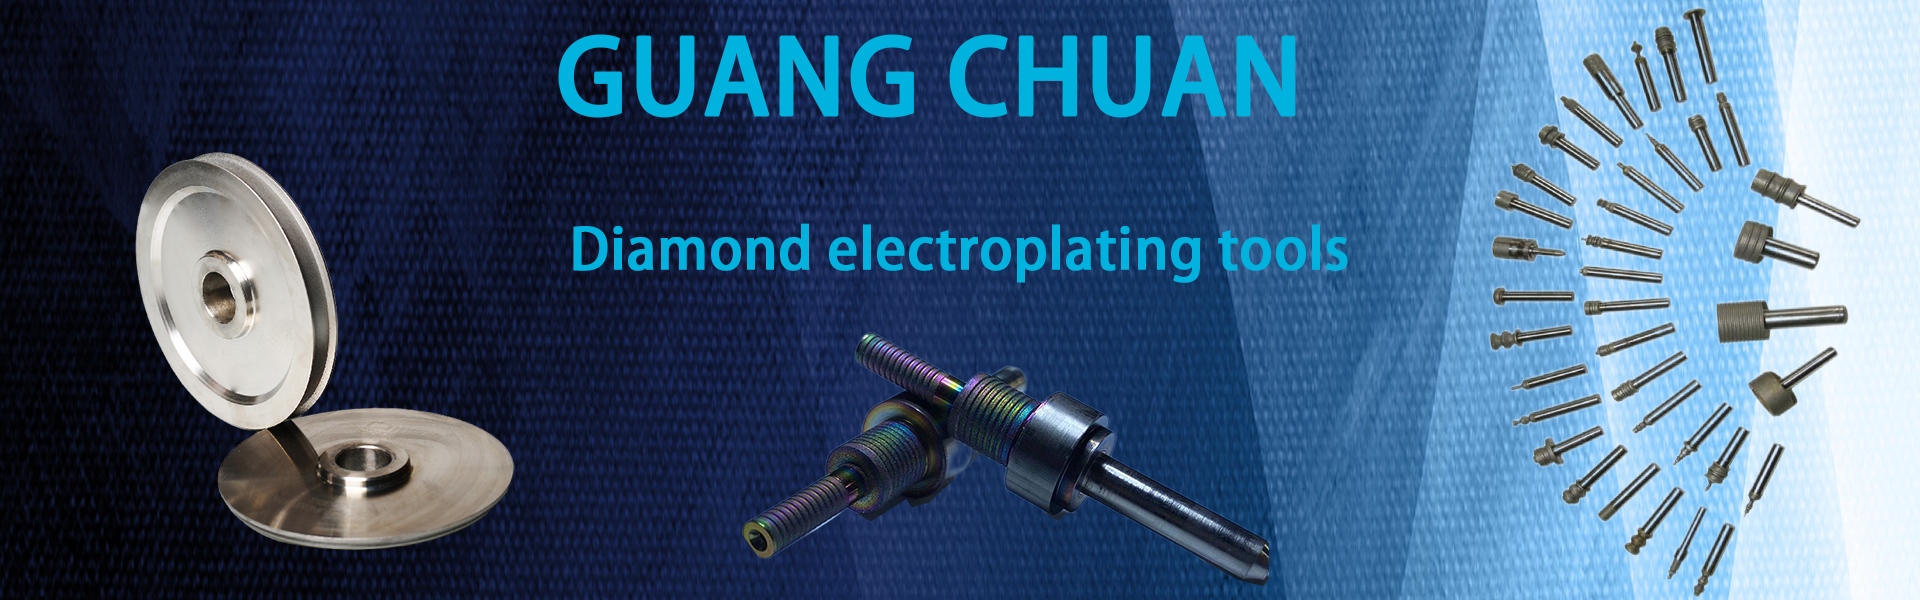 다이아몬드 그라인딩 휠, 다이아몬드 도구, 드릴 비트,Dongguan Guangchuan Abrasives Technology Co., Ltd